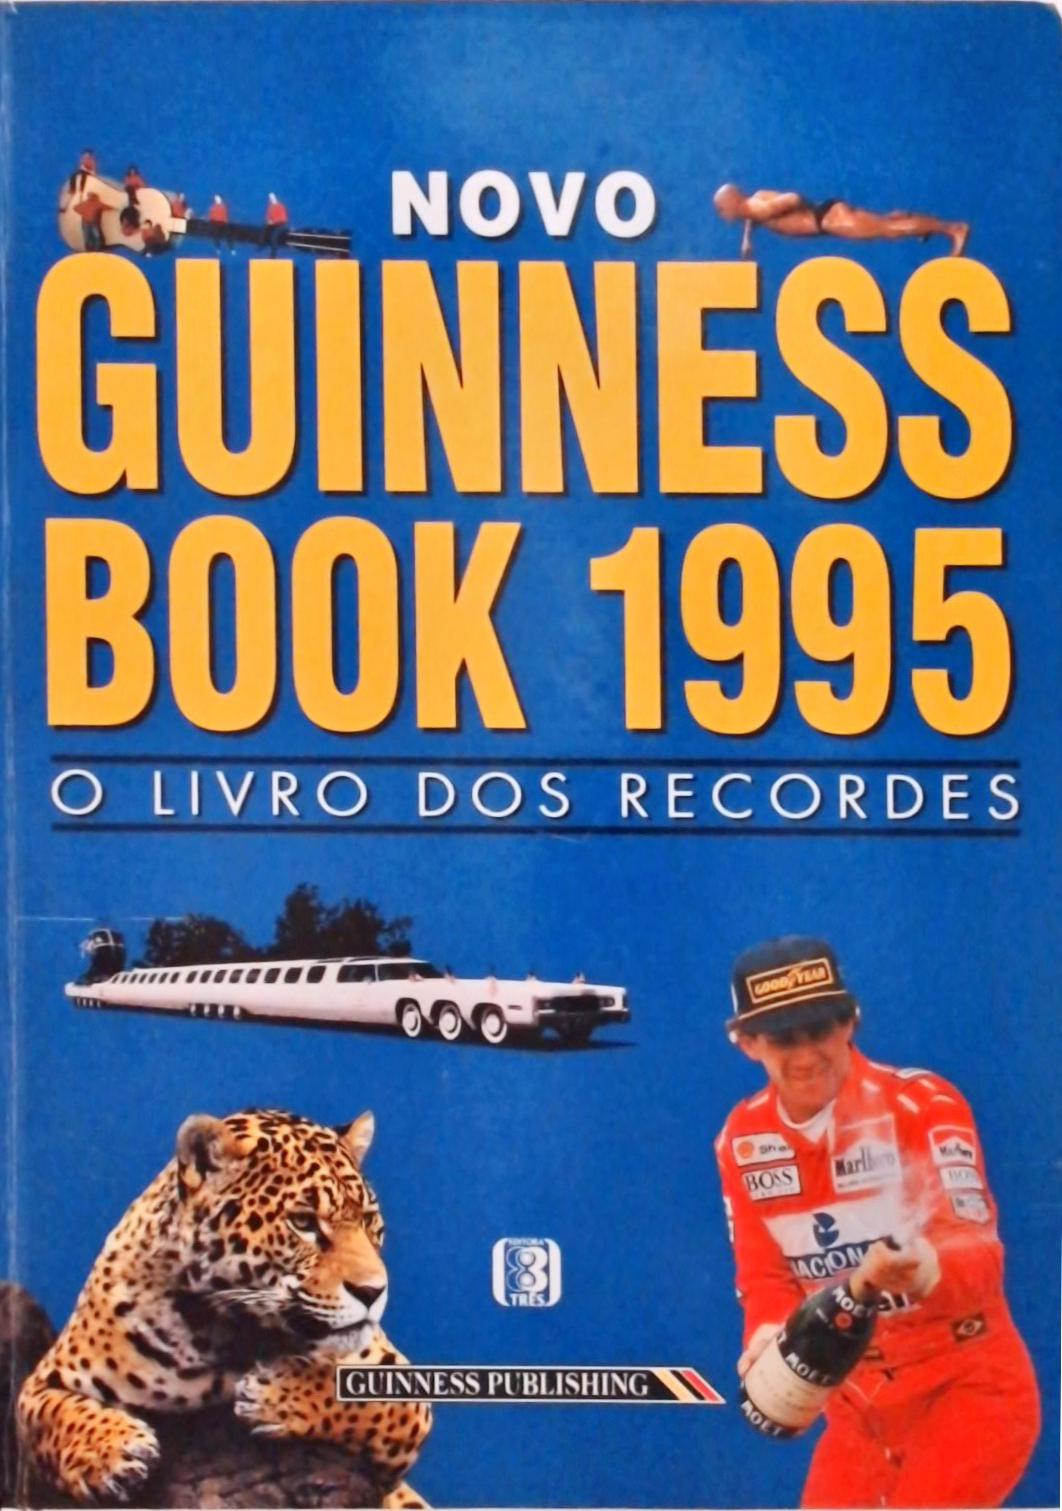 Novo Guinness Book 1995 - O Livro dos Recordes